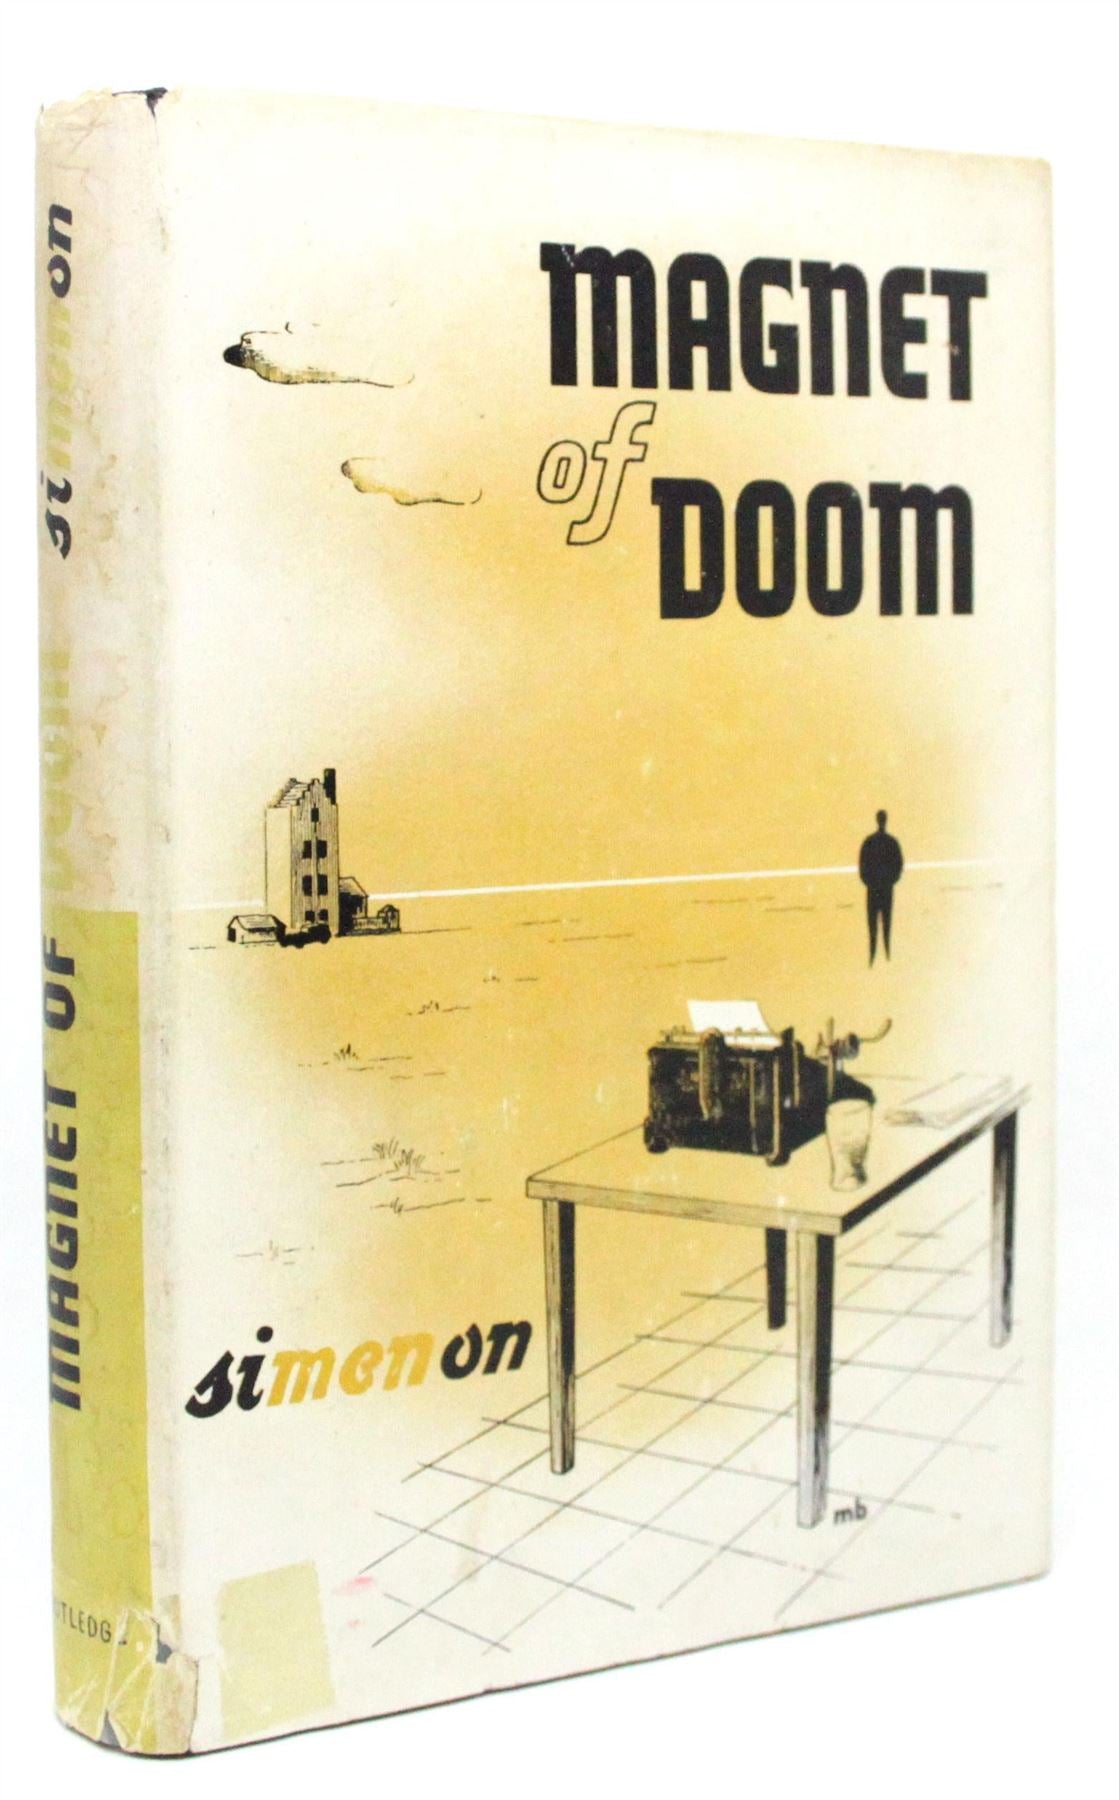 Magnet of Doom